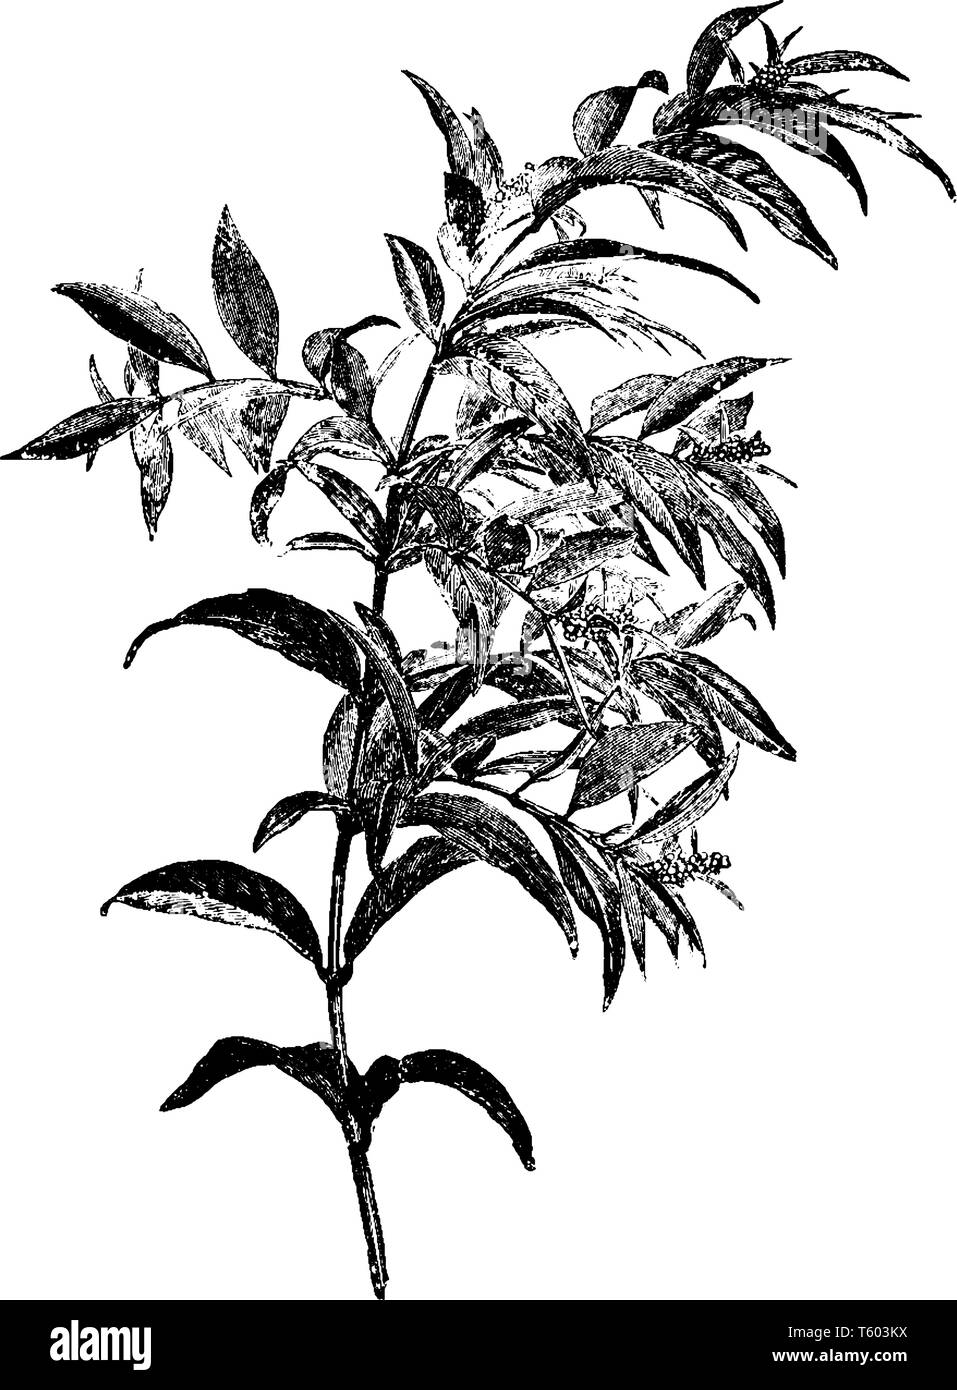 Phantiansia Fountaini Strauch wächst hoch. Die Blätter sind lanzettlich in Gegensatzpaaren angeordnet, vintage Strichzeichnung oder Gravur Abbildung. Stock Vektor